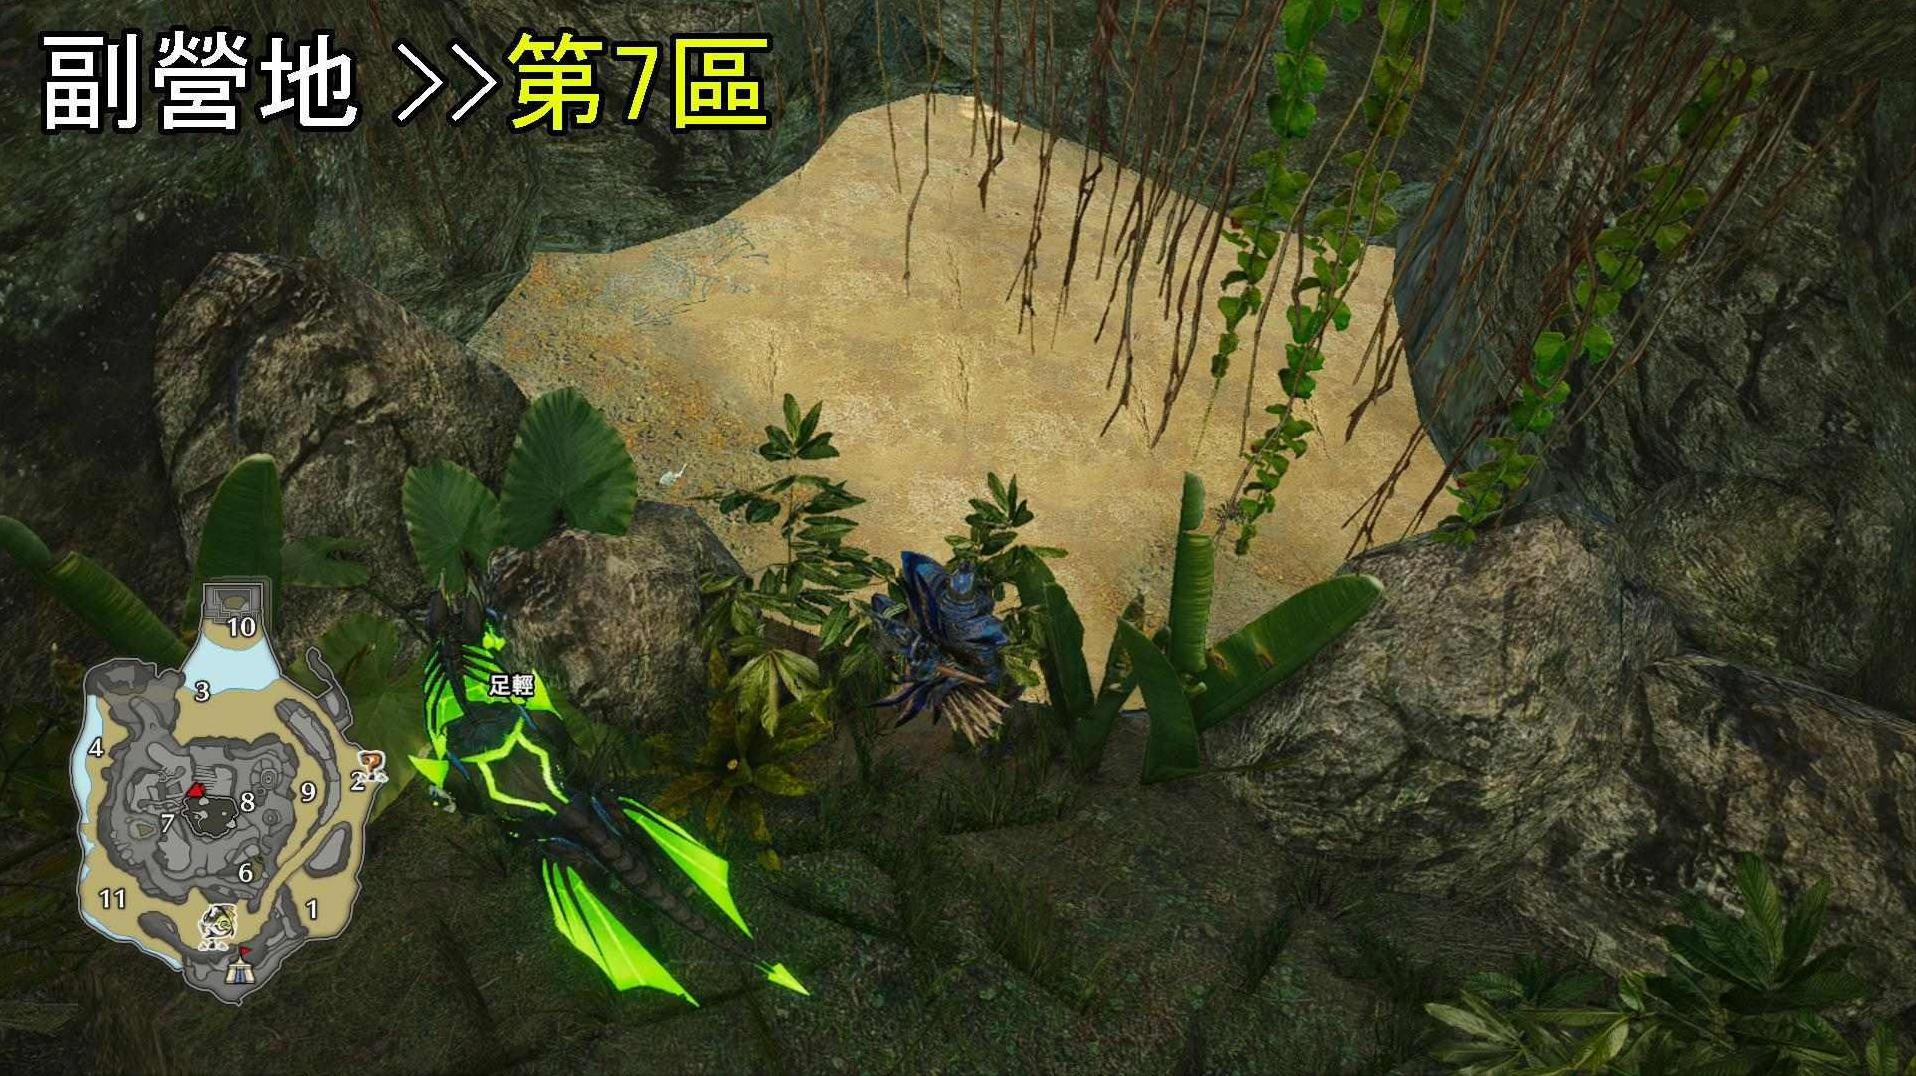 《怪物猎人崛起》曙光DLC密林环境生物与陷阱位置介绍 - 第4张